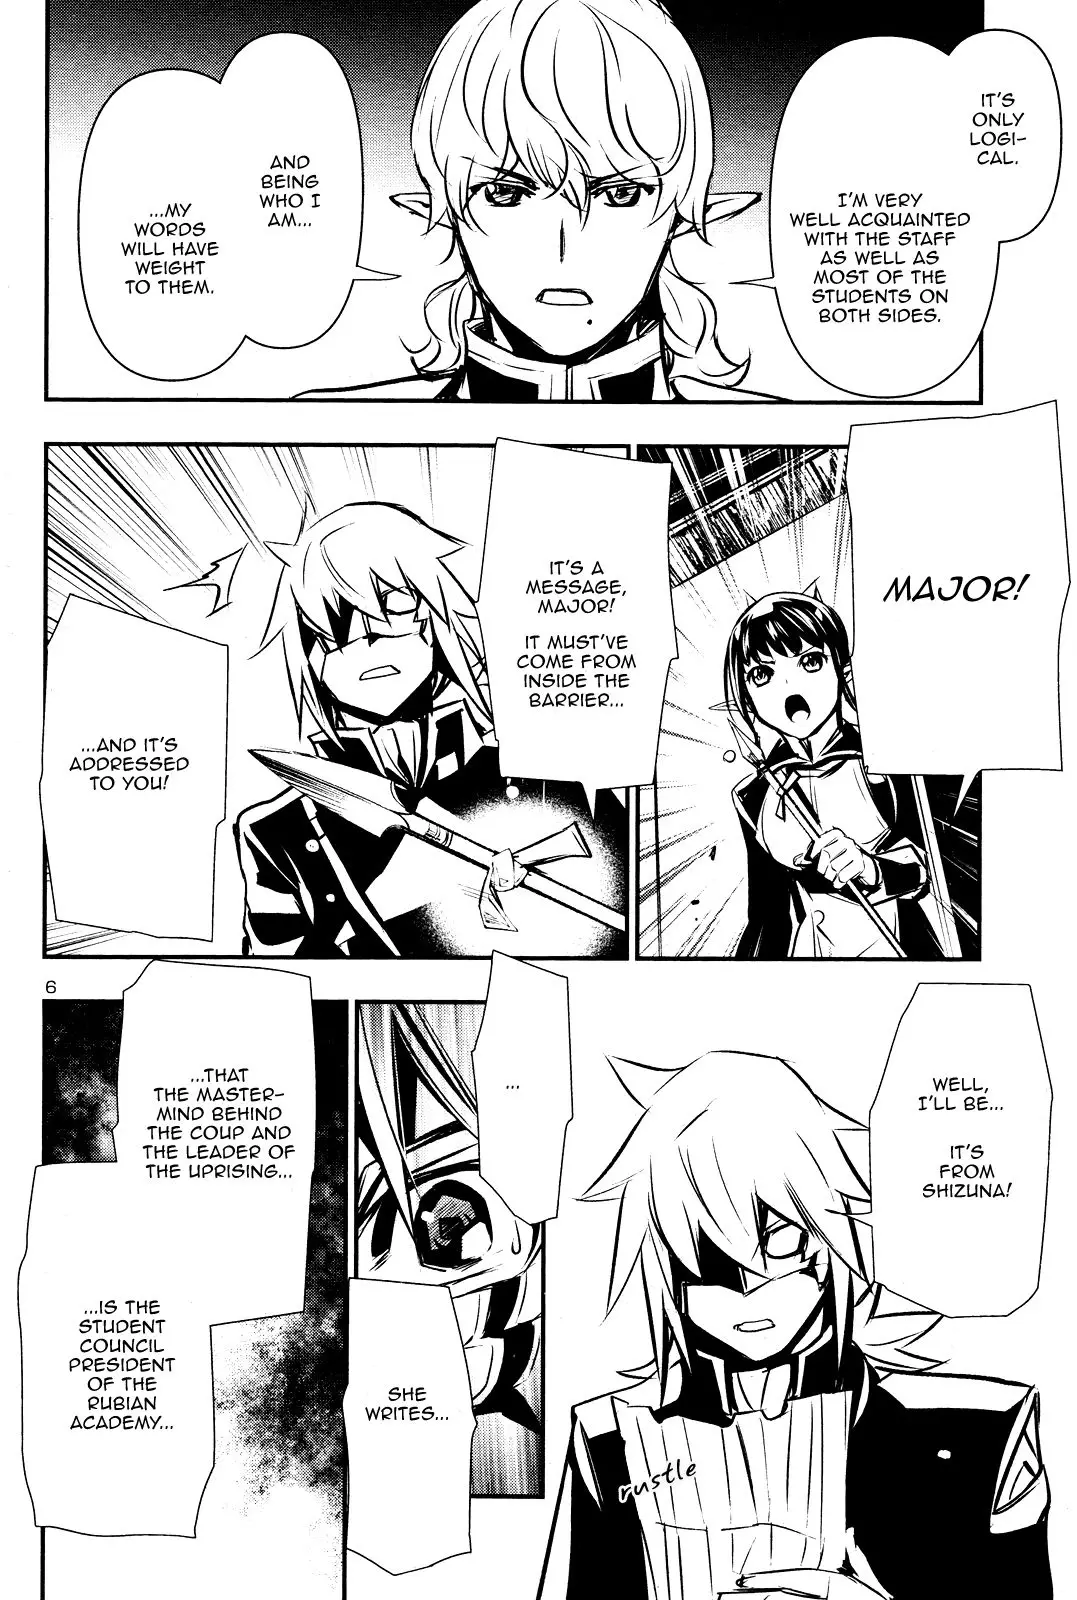 Shinju no Nectar - 43 page 5